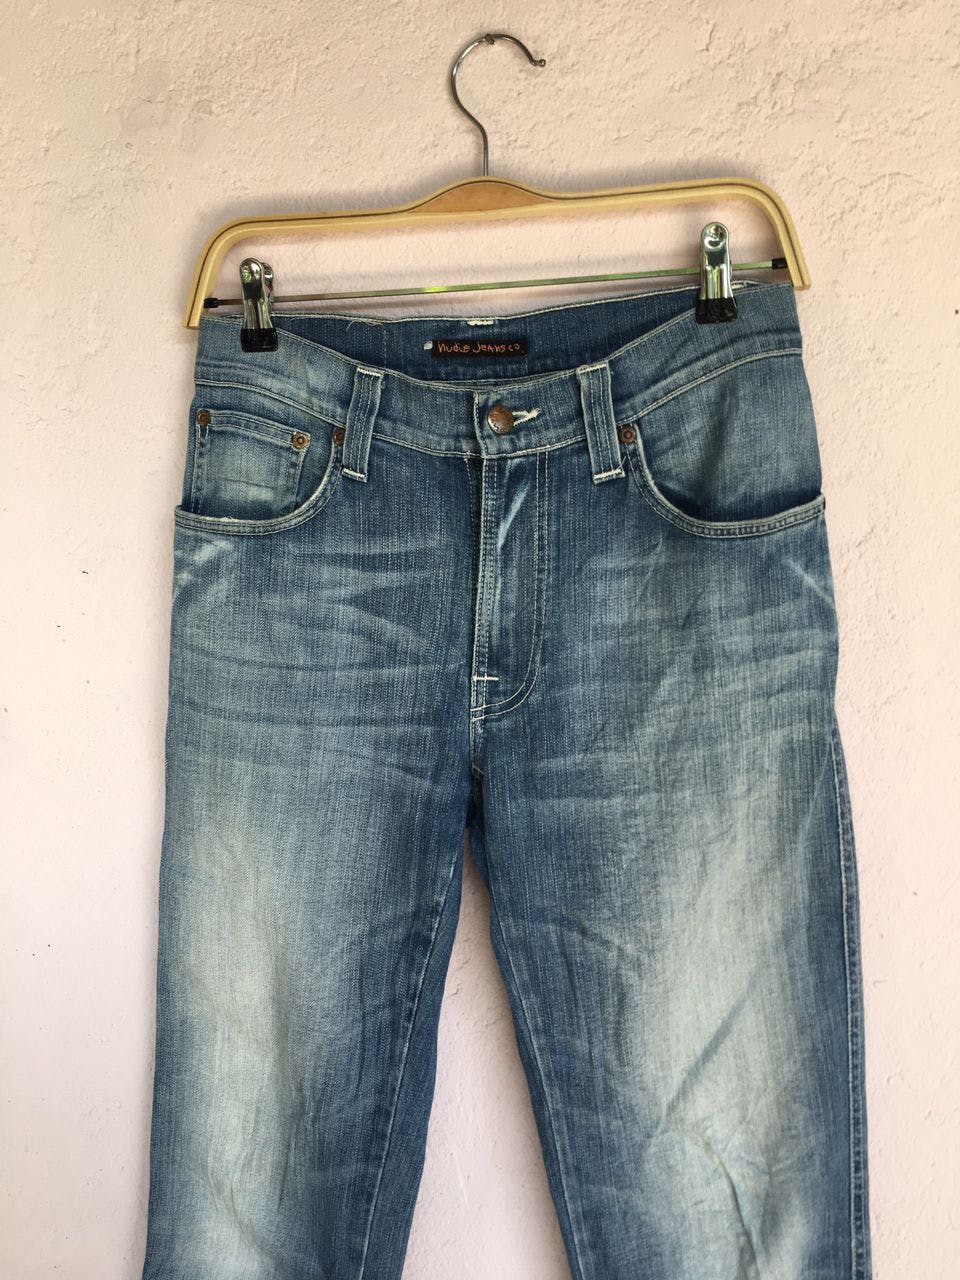 Nudie jeans.co Denim Slim jeans Men’s Pants made in Italy - 5